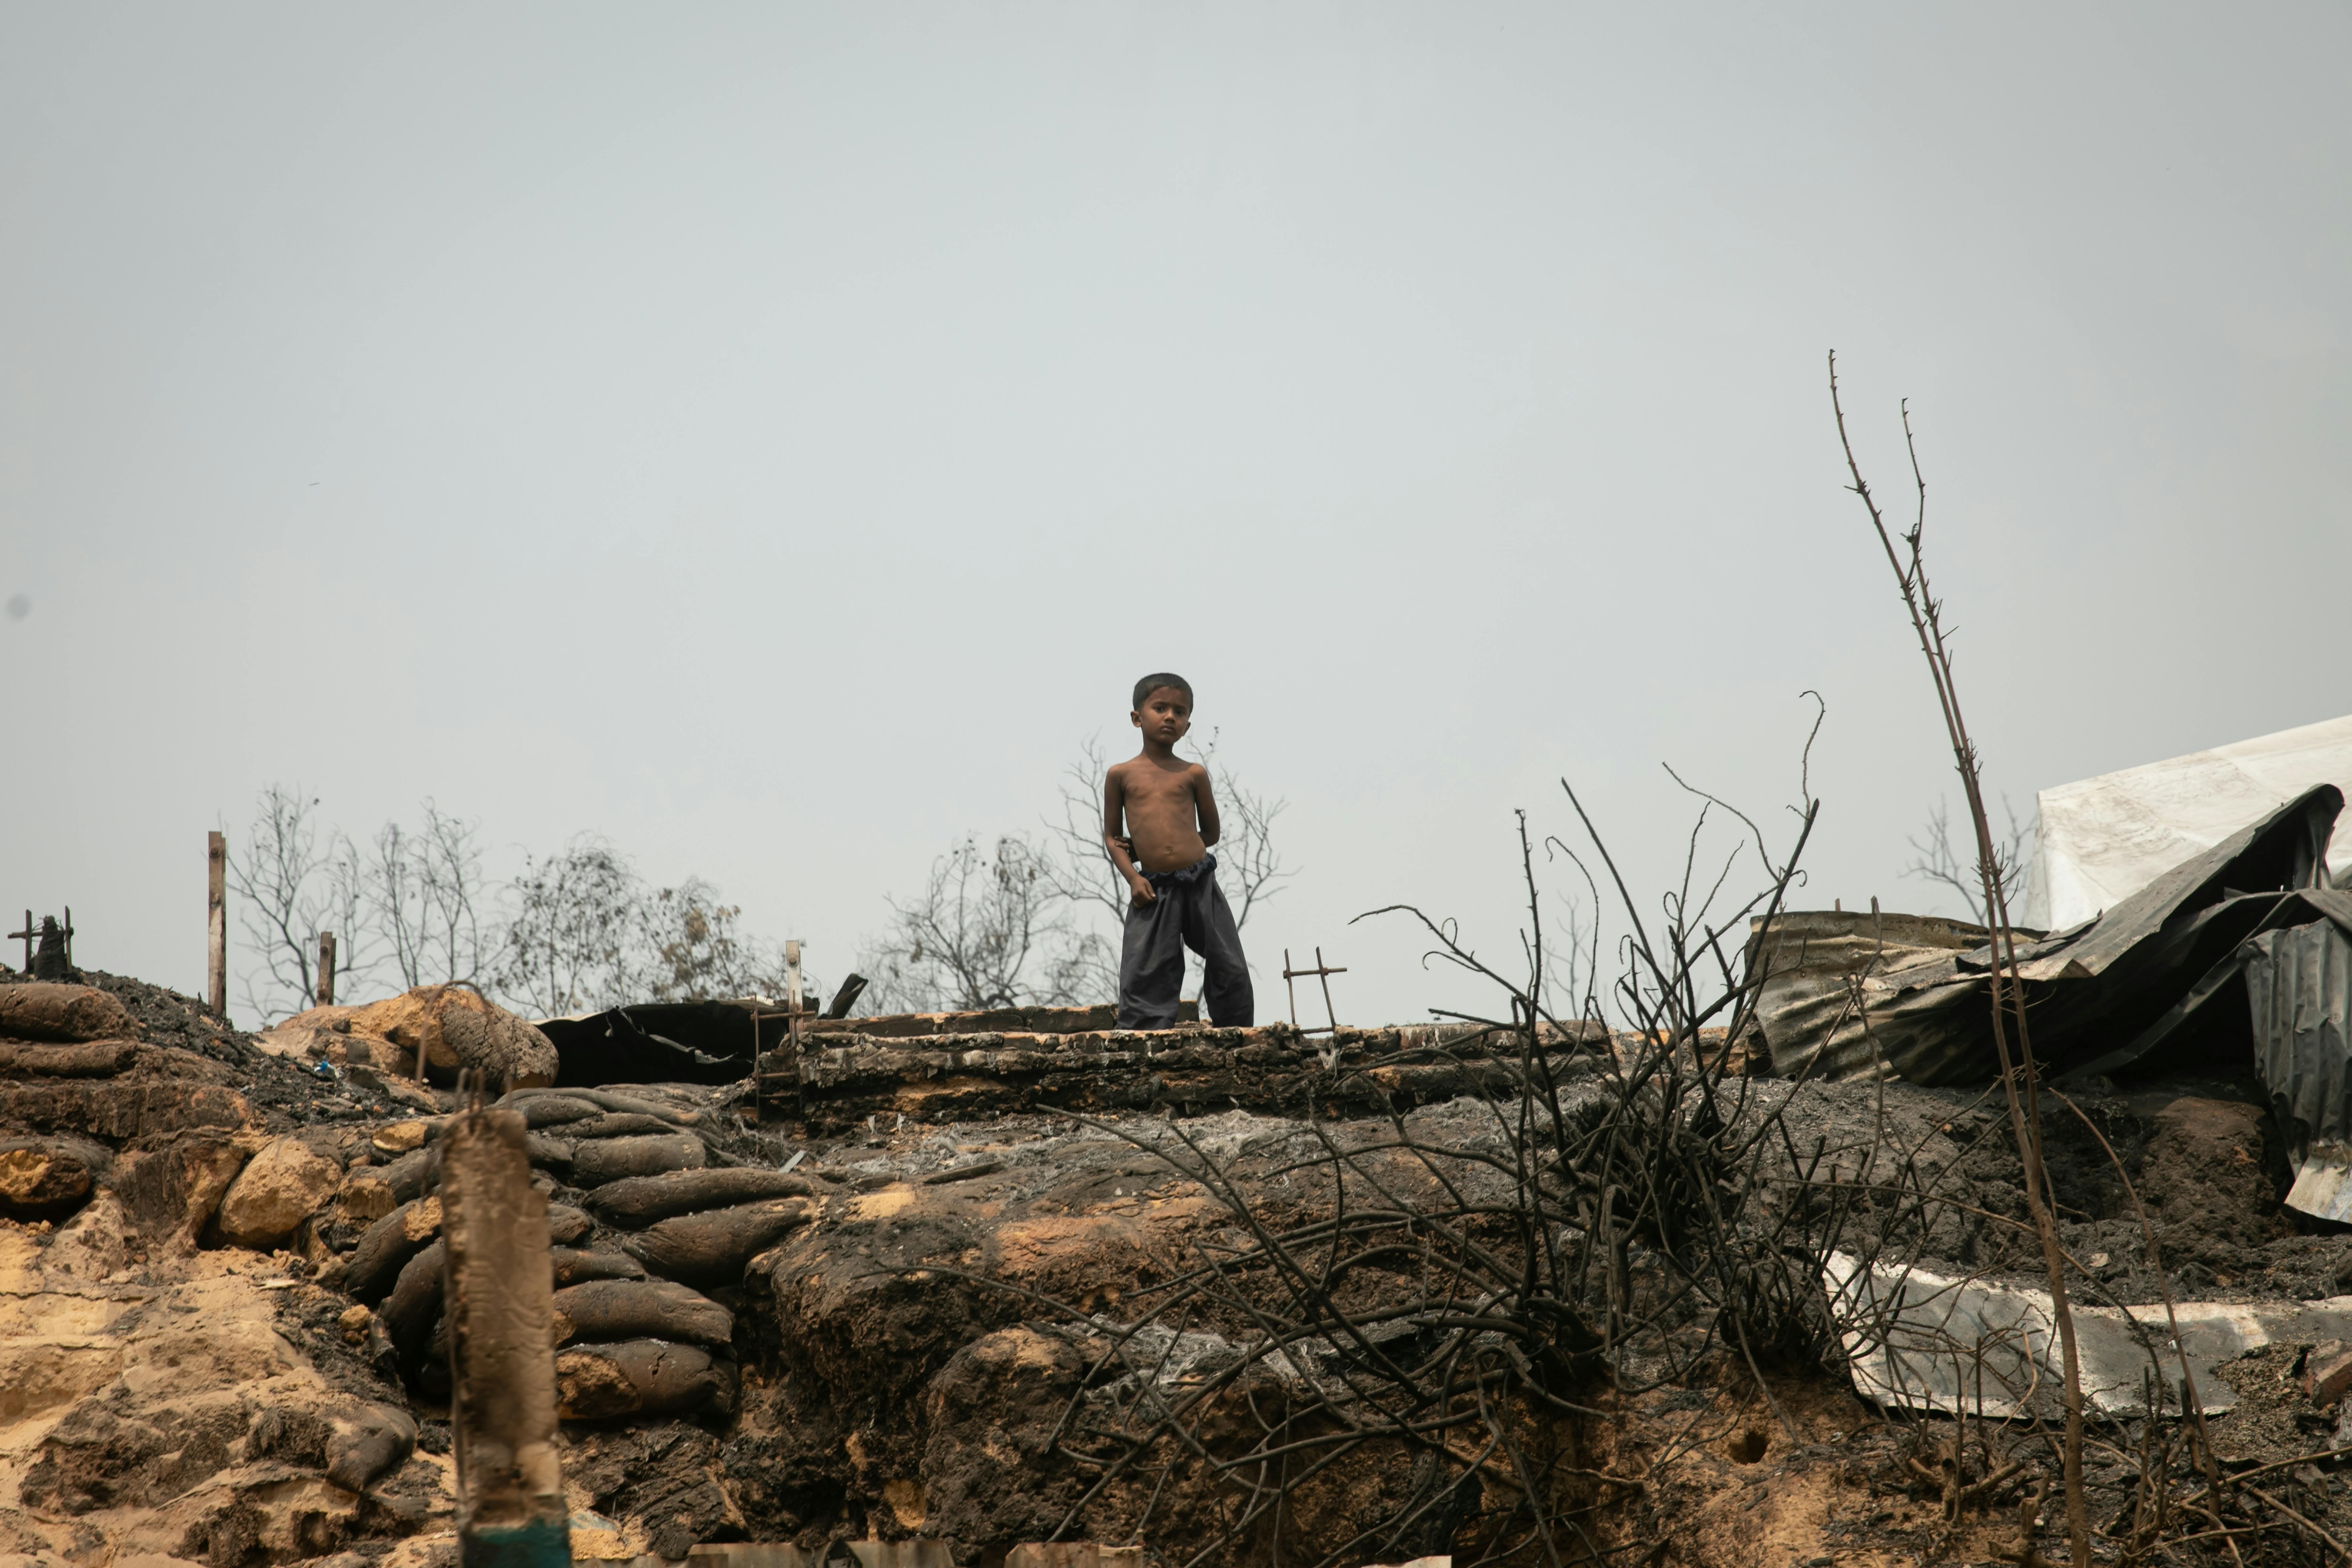 Un bambino si trova tra le rovine dell'incendio che ha devastato l'area Balukhali nel campo profughi Rohingya a Cox's Bazar. Migliaia di case sono state distrutte sconvolgendo la vita delle famiglie Rohingya e dei bambini che vivono nei campi profughi.